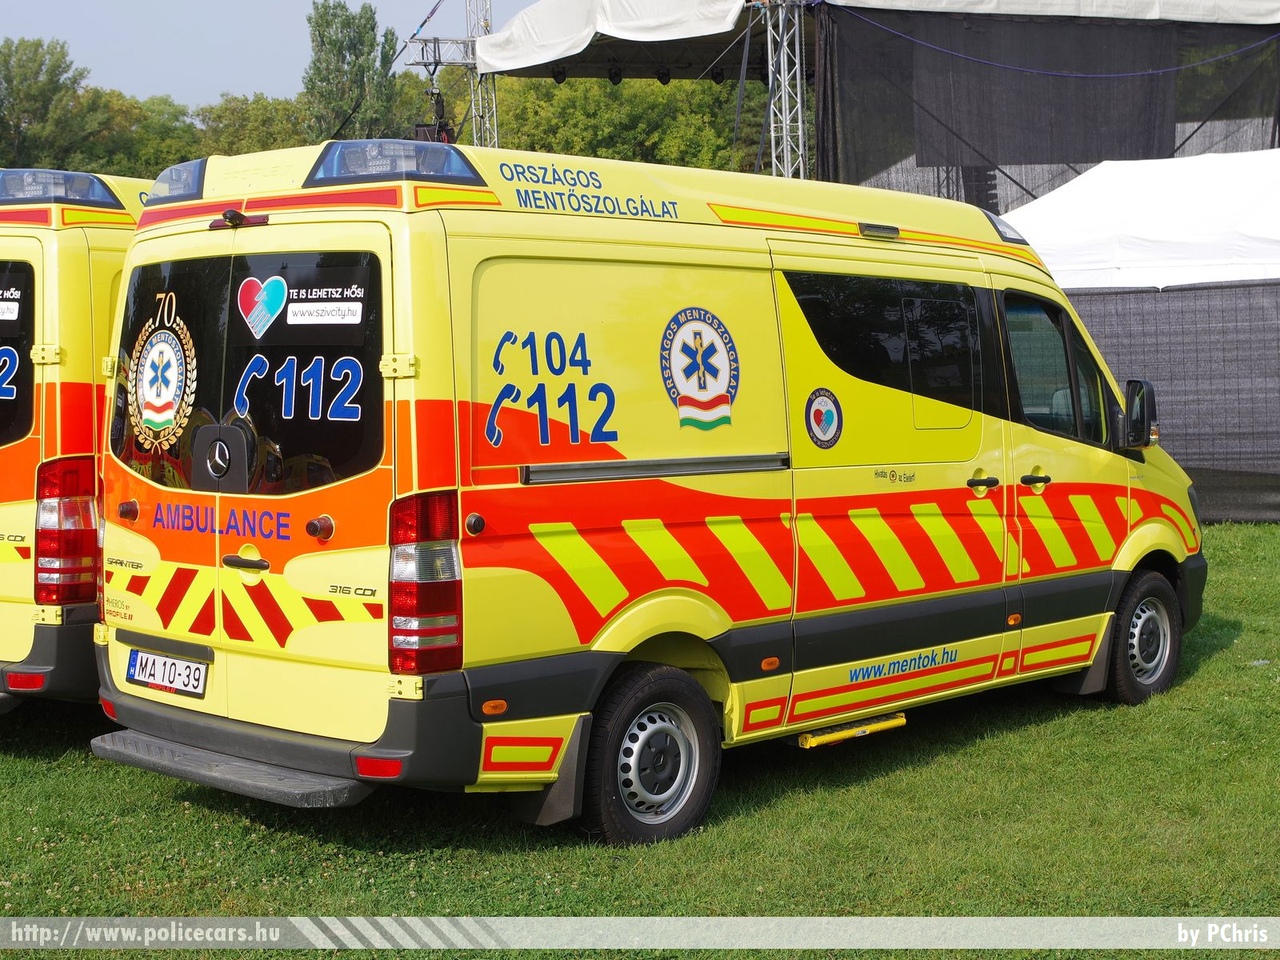 Mercedes-Benz Sprinter II facelift 316CDI Profile, Heros, Országos Mentõszolgálat, fotó: PChris
Keywords: magyar Magyarország mentő mentőautó OMSZ Hungary hungarian ambulance MA10-39